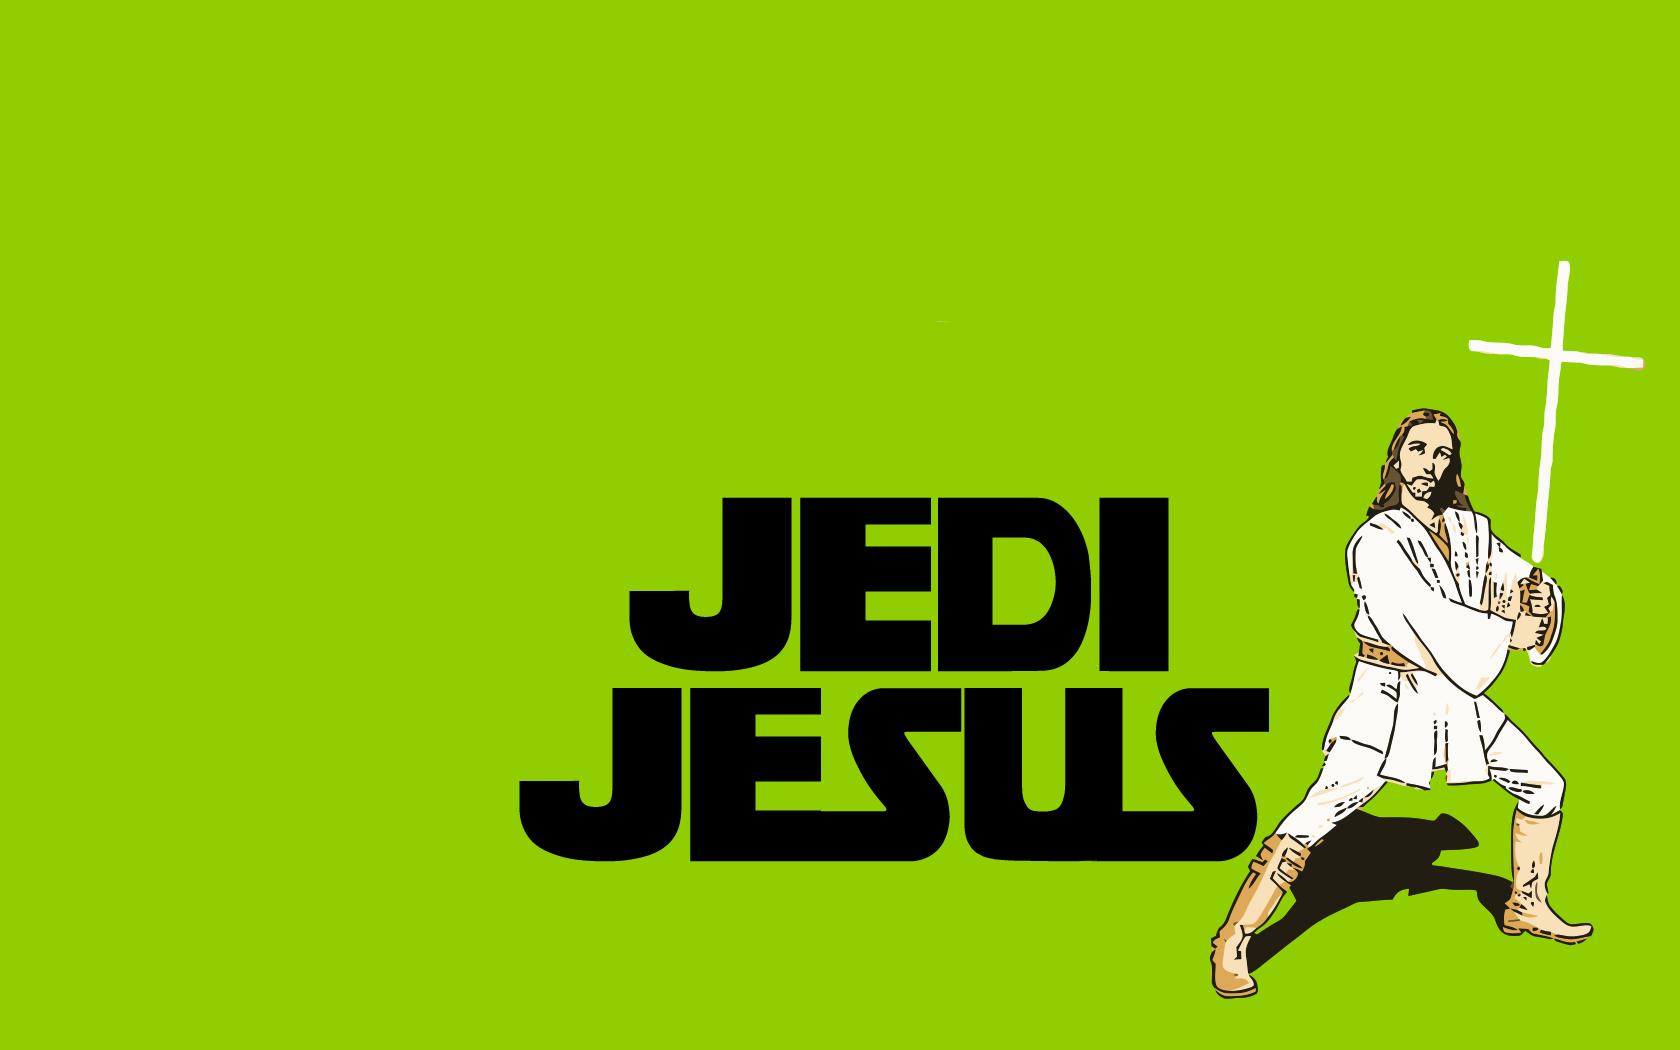 Jedi Jesus Funny Picture Wallpaper Wallpaper